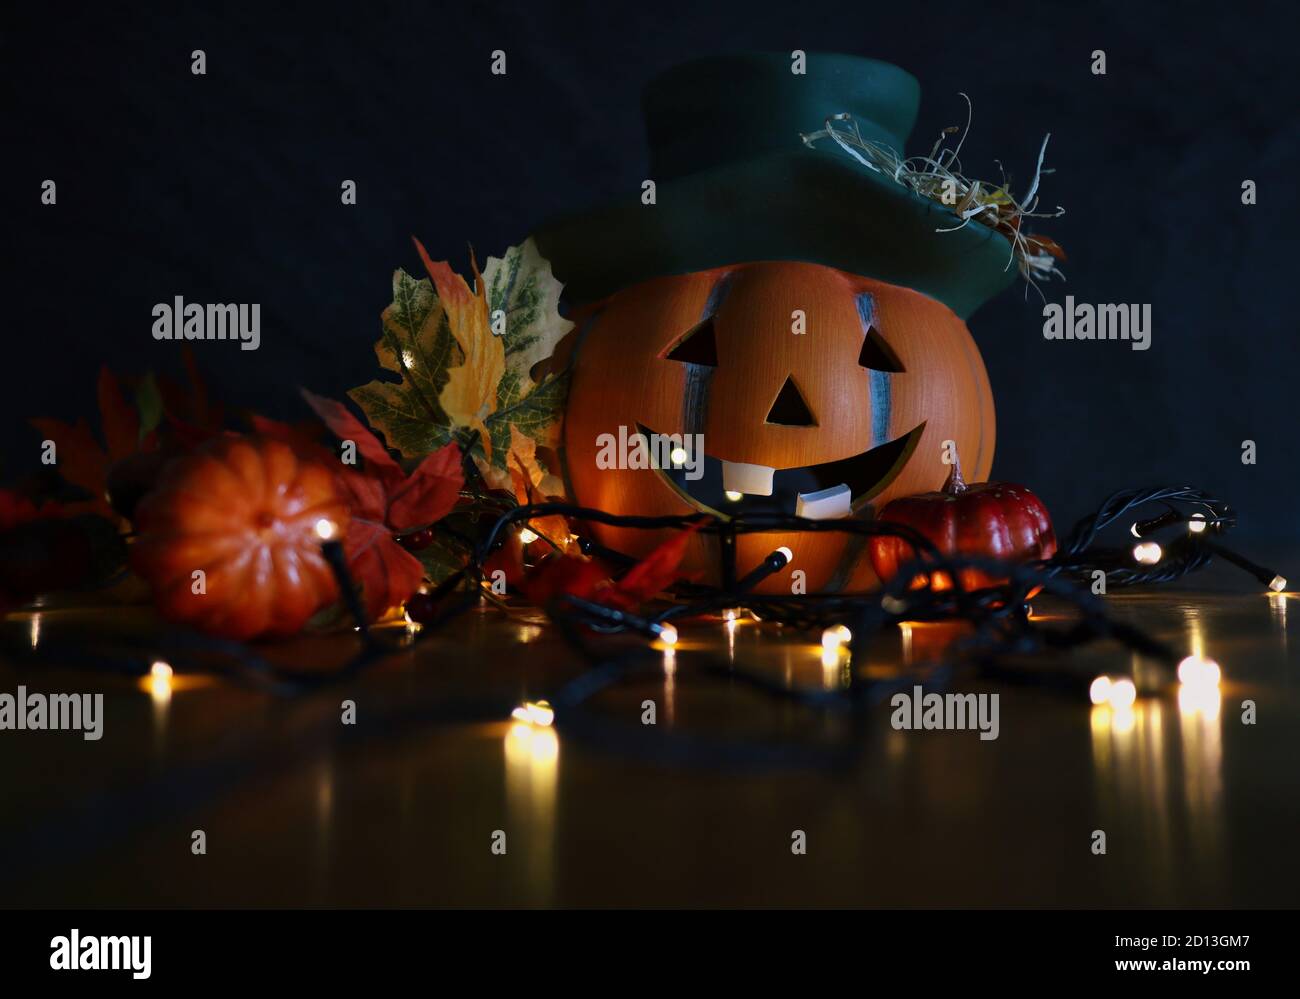 Calabaza de cerámica de Halloween con sombrero verde y sonrisa con hojas artificiales de otoño y luces parpadeantes. Otoño Moody y Halloween Vibes. Foto de stock